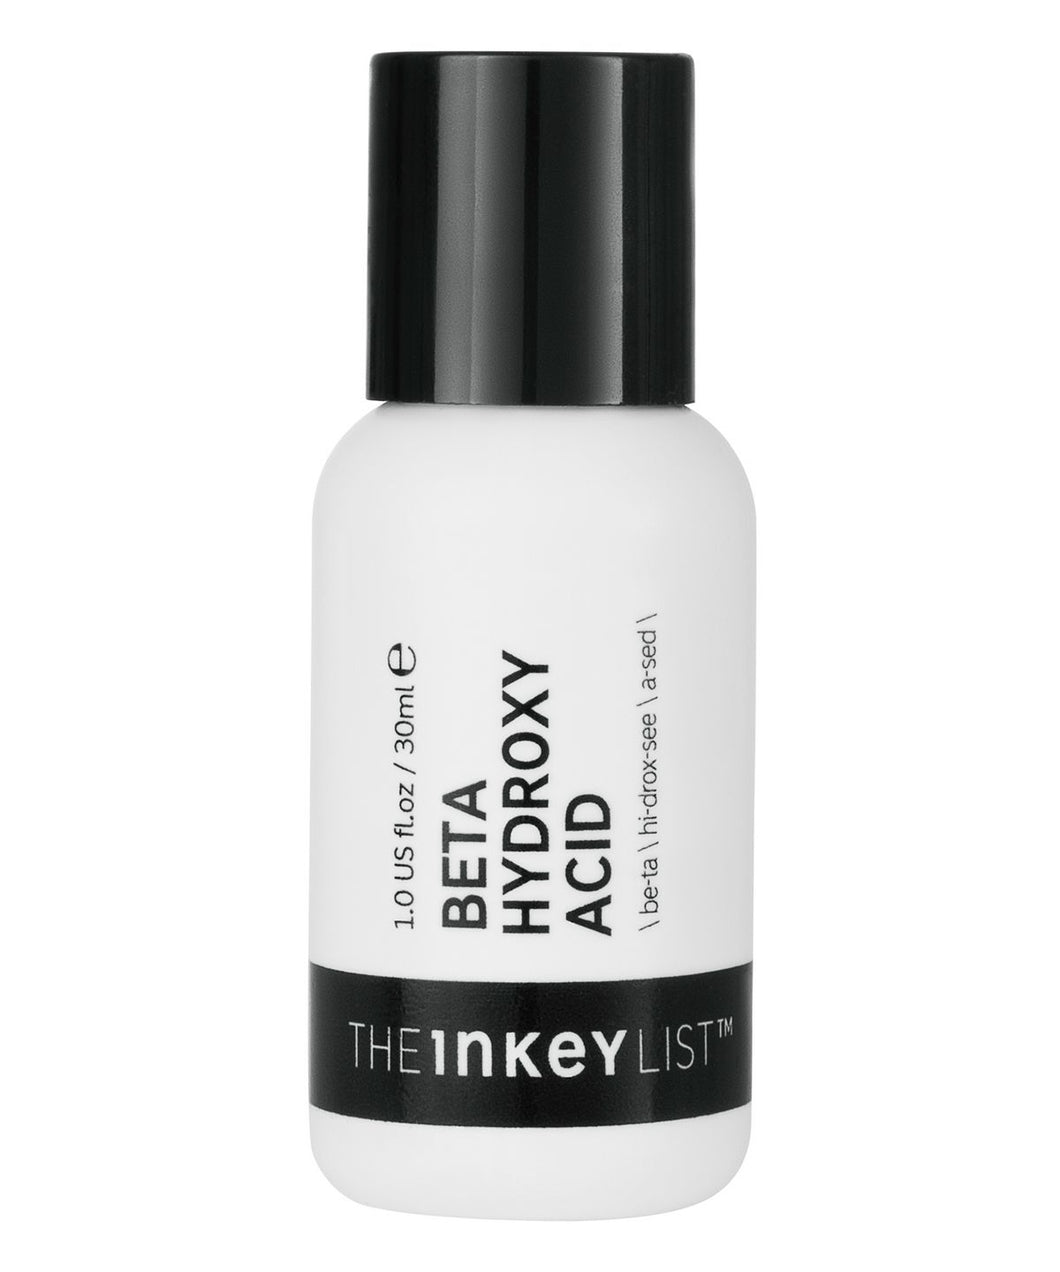 The Inkey List Beta hydroxy acid